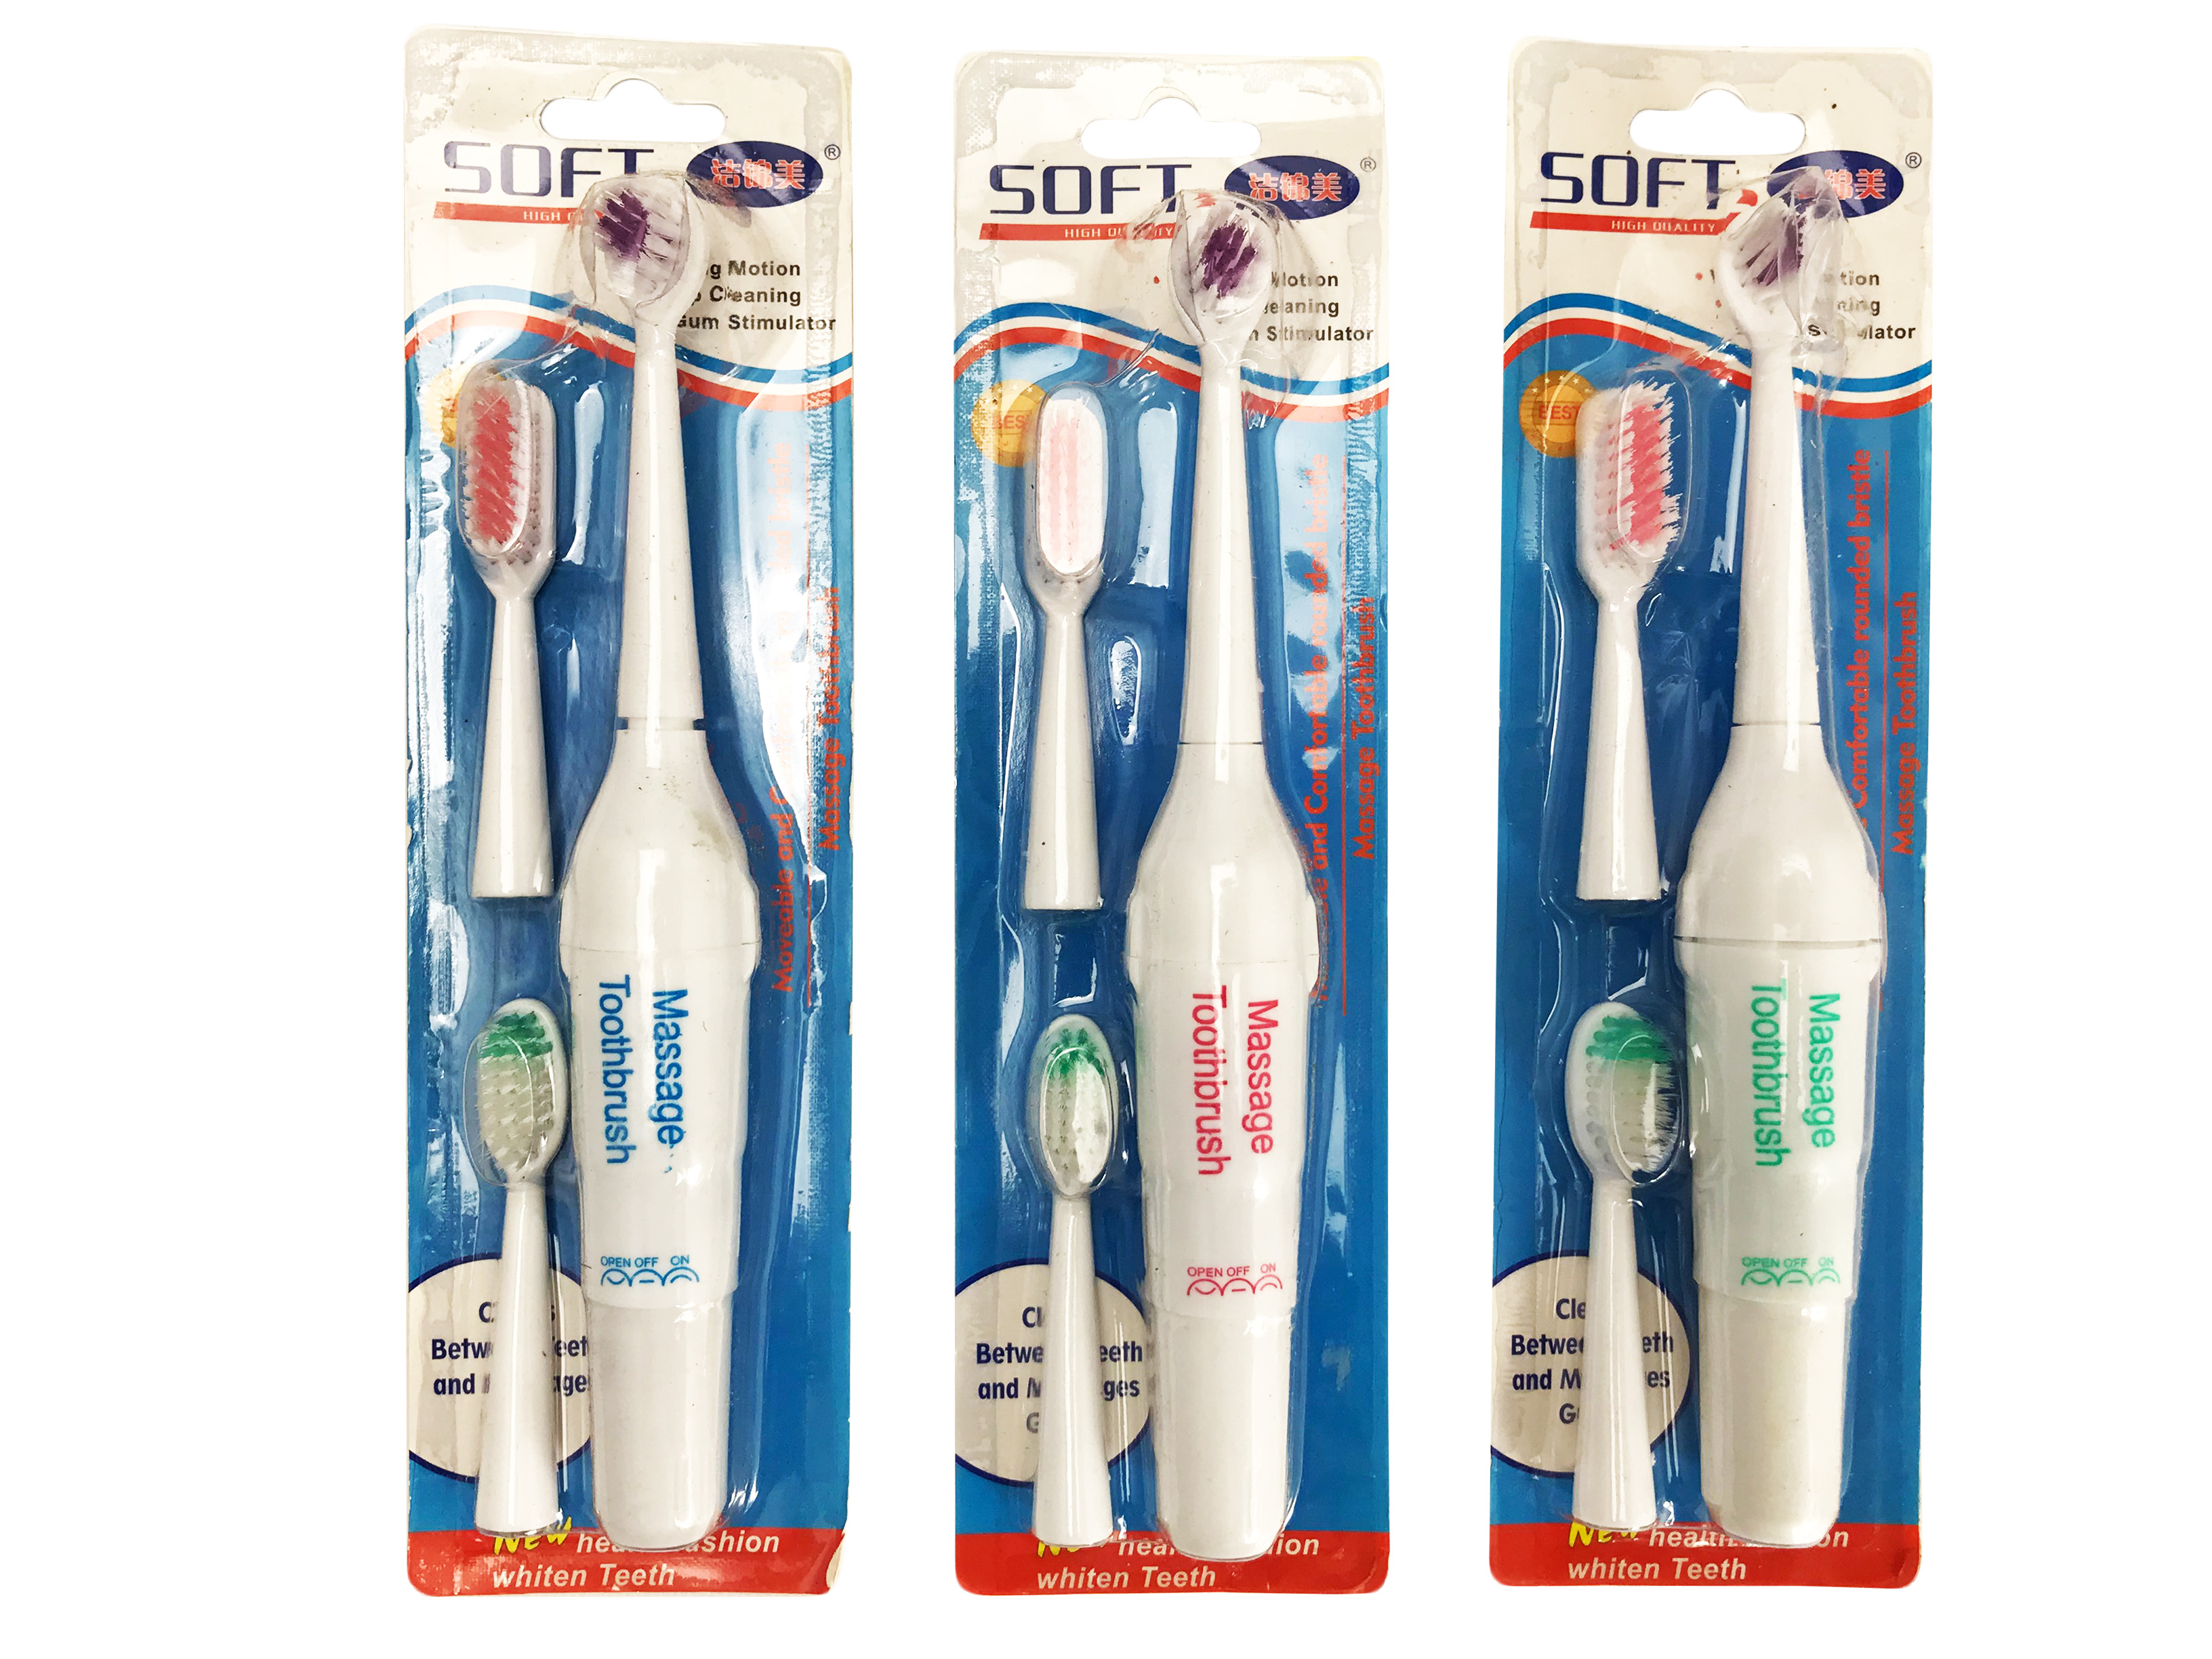 Электрическая зубная щётка 3 В 1 Massage Toothbrush оптом